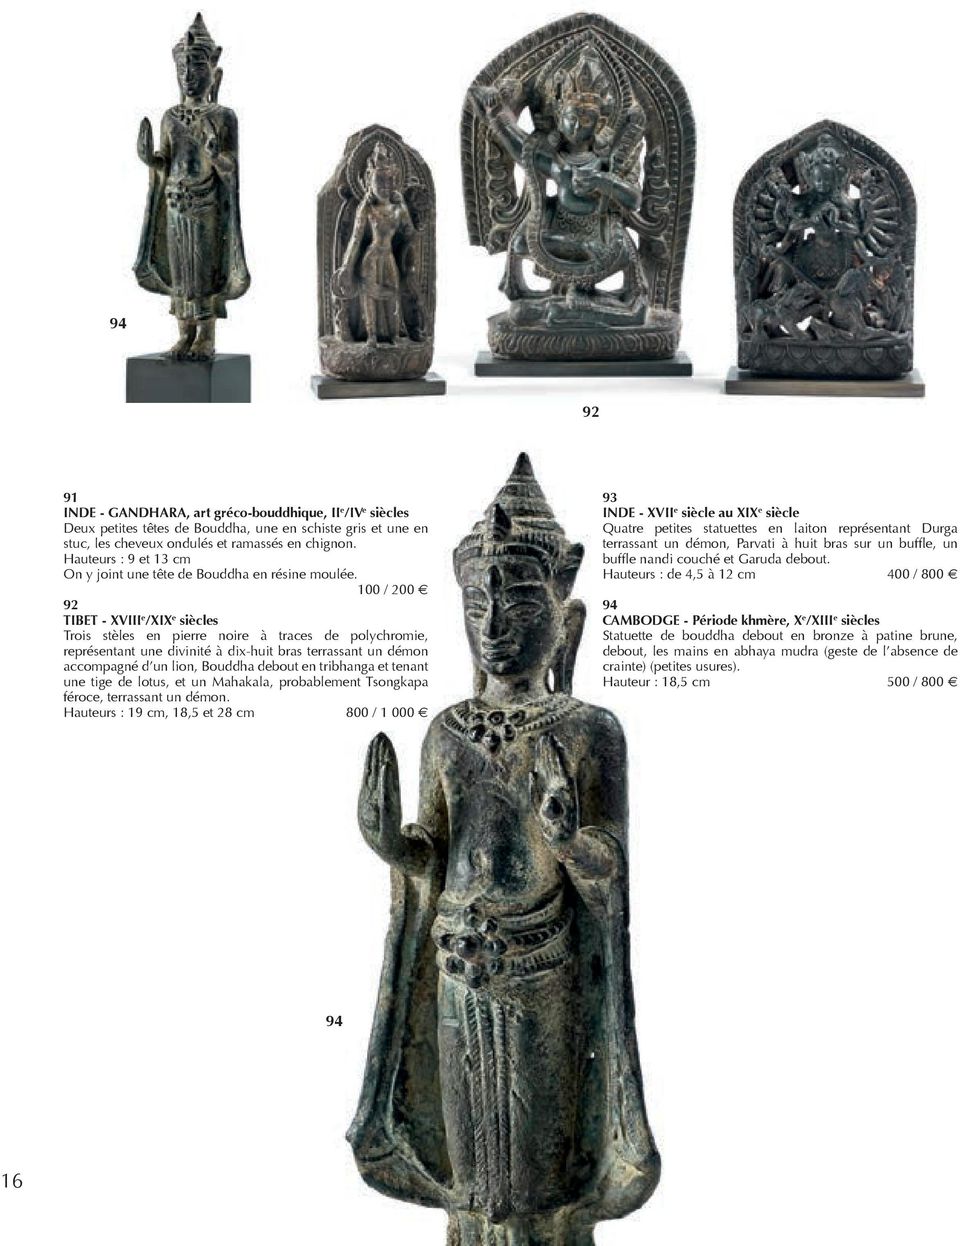 100 / 200 92 TIBET - XVIII e /XIX e siècles Trois stèles en pierre noire à traces de polychromie, représentant une divinité à dix-huit bras terrassant un démon accompagné d un lion, Bouddha debout en